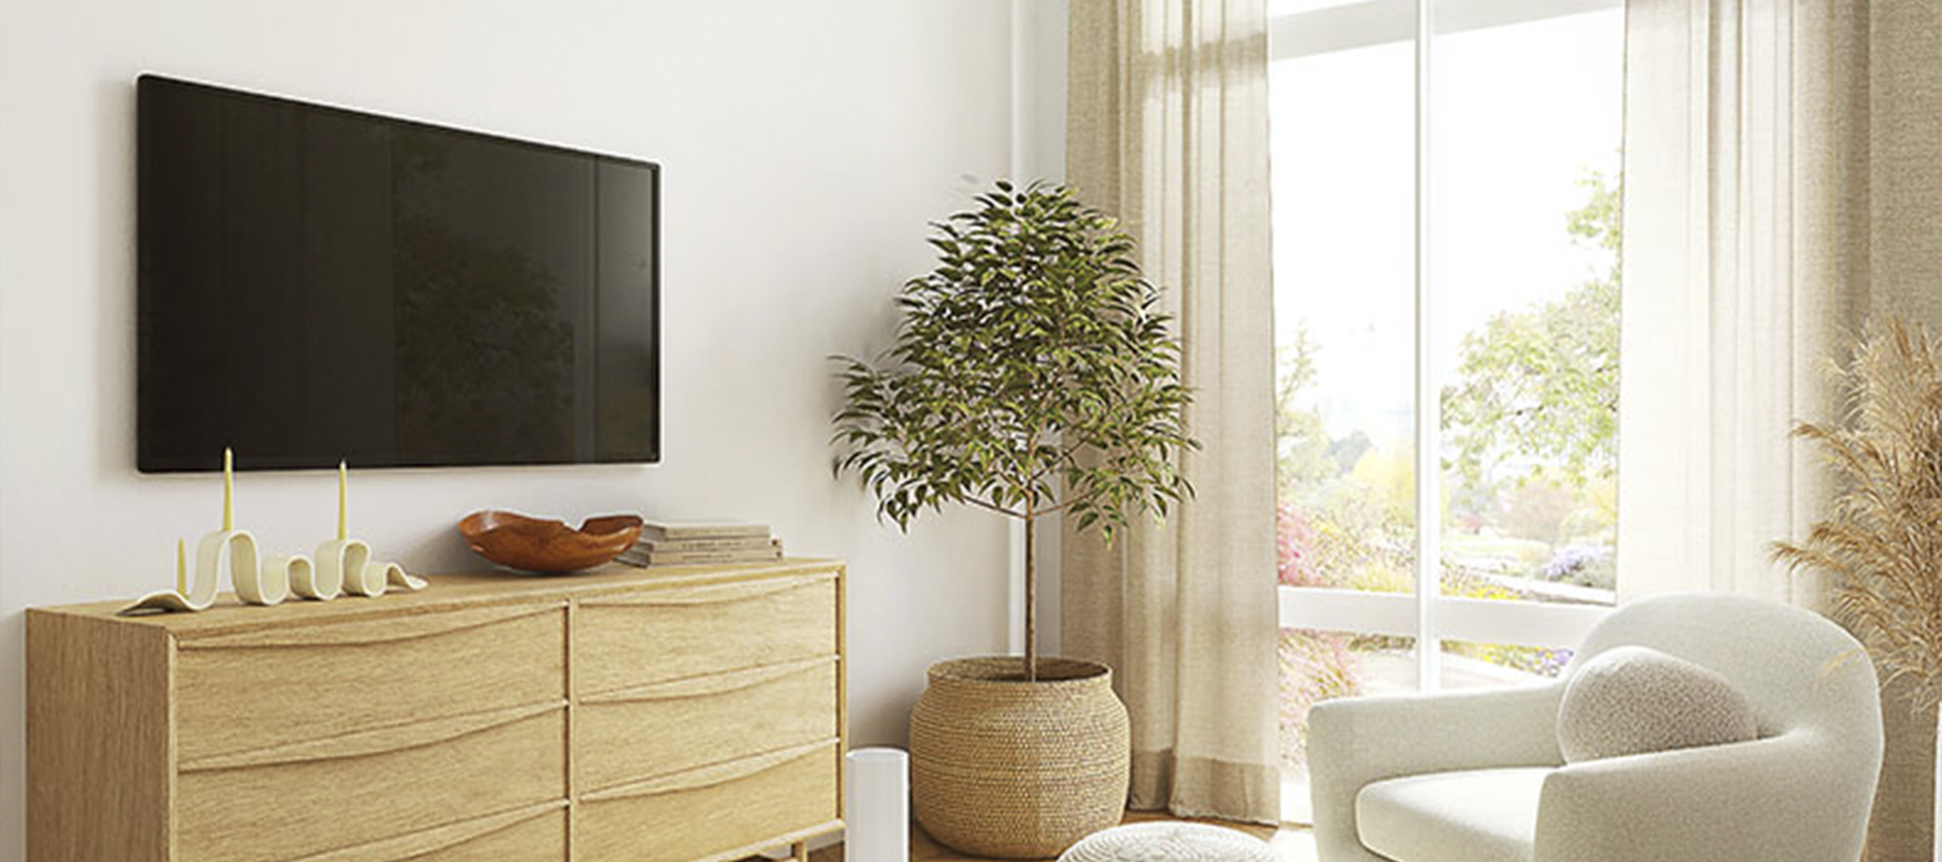 Encuentra el mueble de televisión ideal según tu estilo decorativo